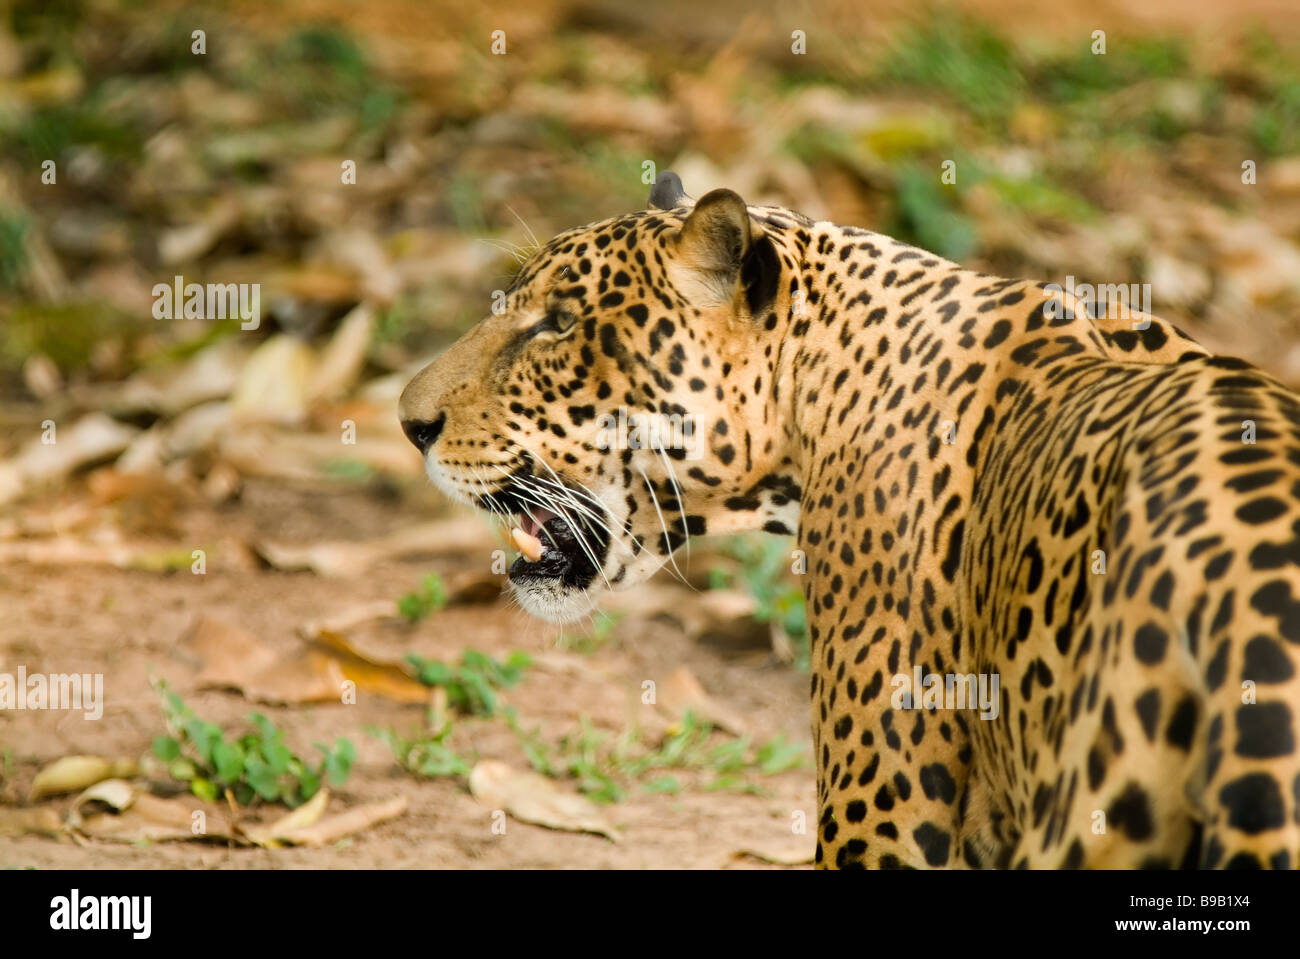 Jaguar Panthera onca, Brazil Stock Photo